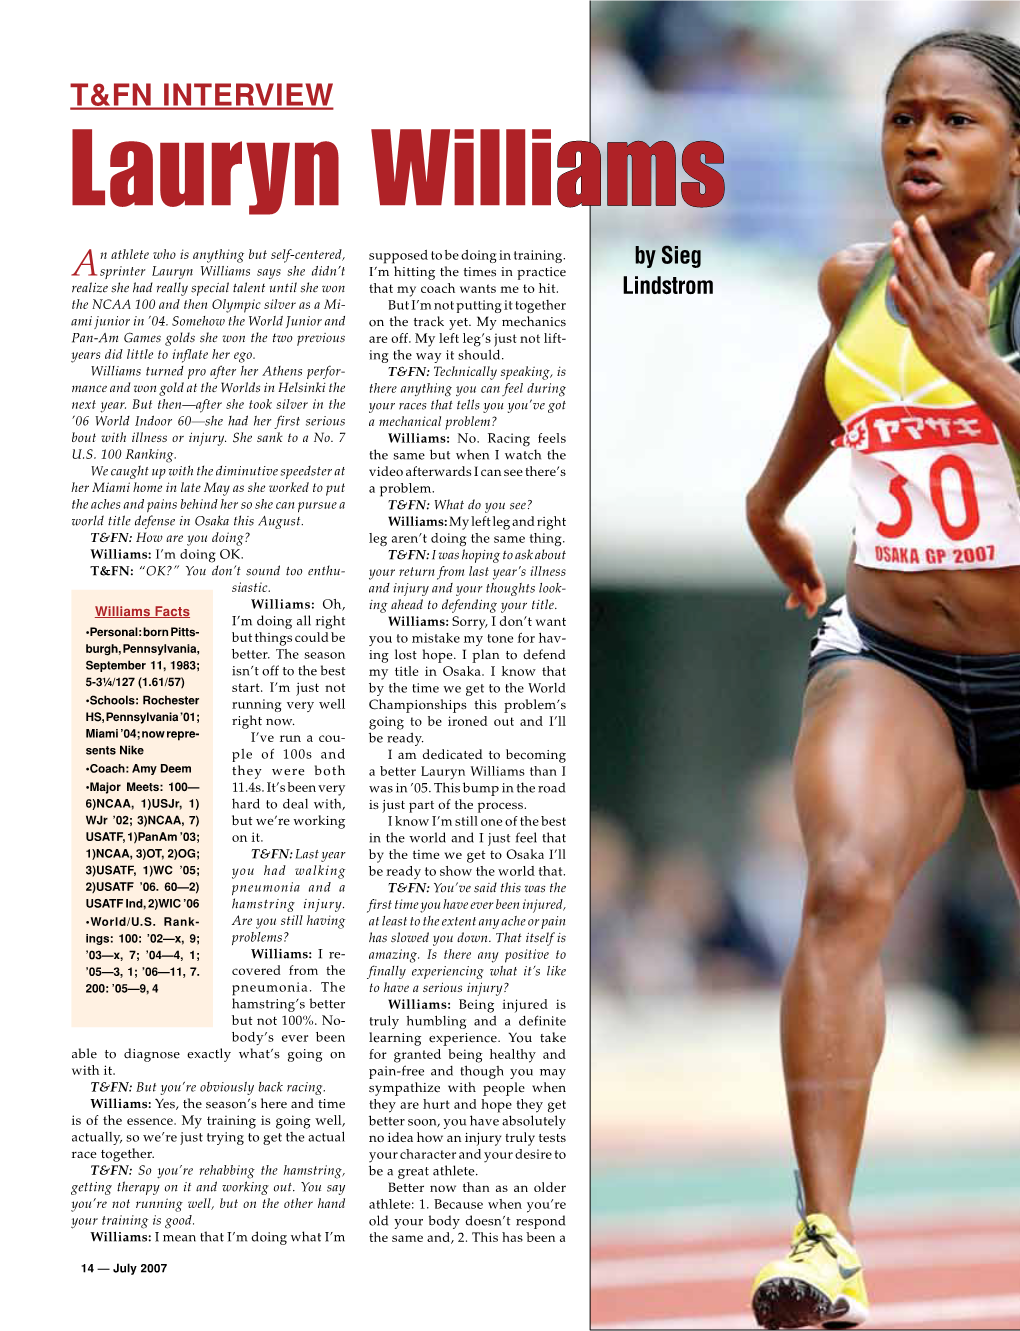 Lauryn Williams